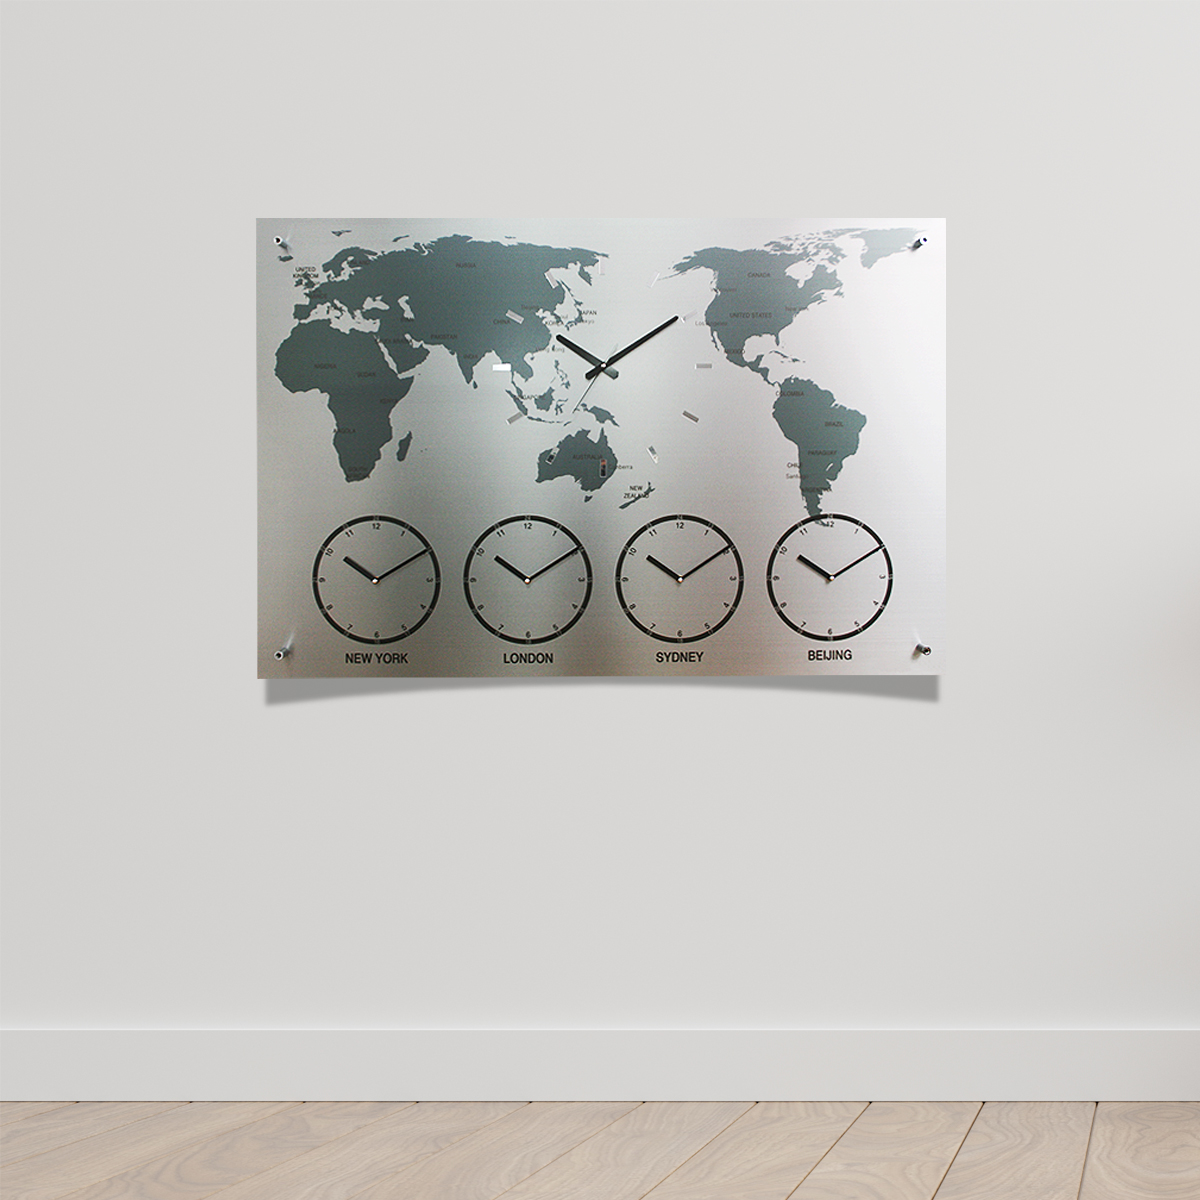 국산제작정품 월드타임벽시계-중대형 120cm 다국적세계벽시계 세계시간표시